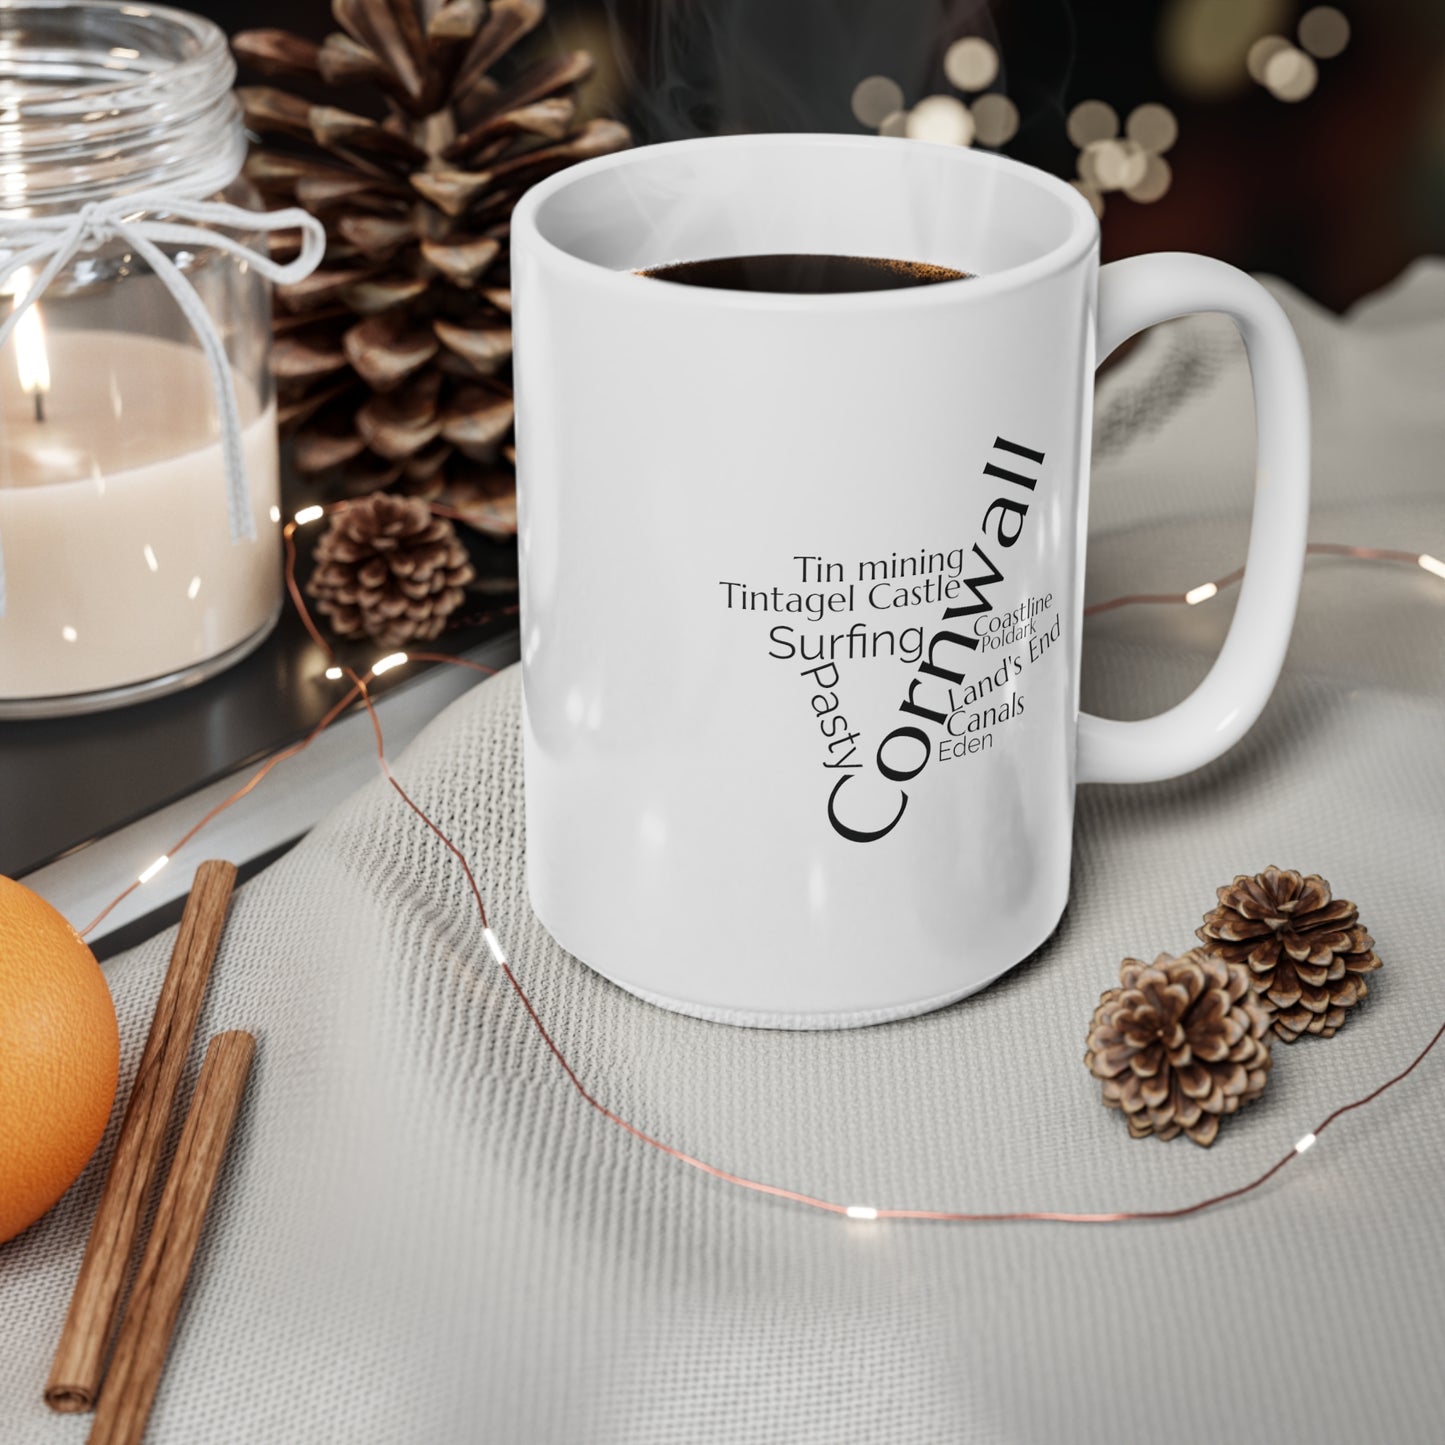 Cornwall word mug, local mug, geography mug, gift, mug, coffee cup, word mug, wordcloud mug, christmas gift, birthday gift